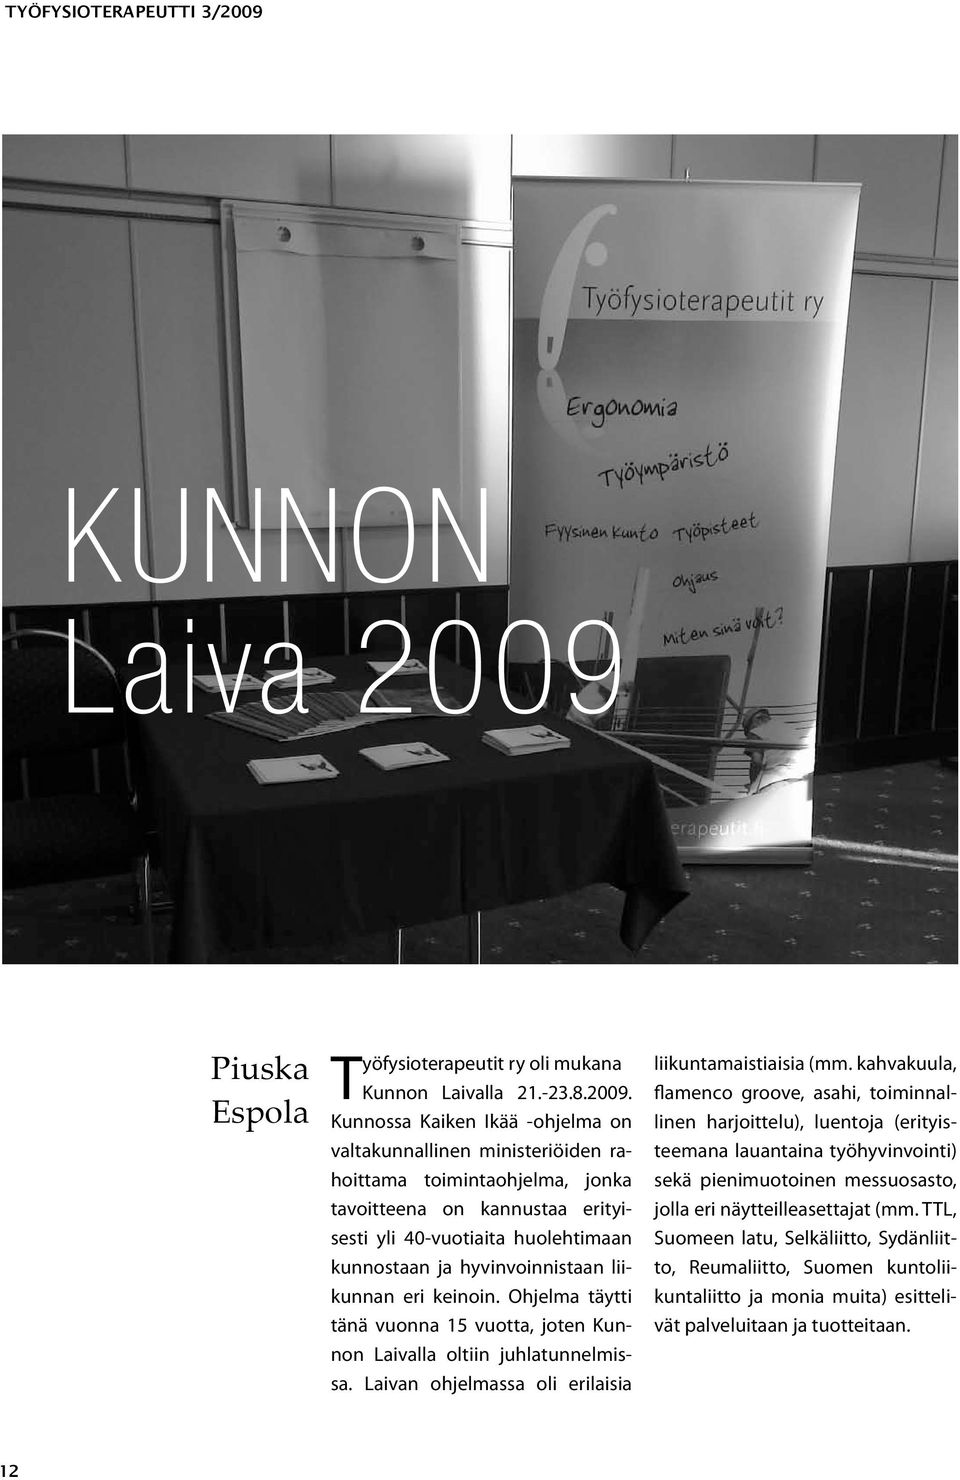 Piuska Espola Työfysioterapeutit ry oli mukana Kunnon Laivalla 21.-23.8.2009.